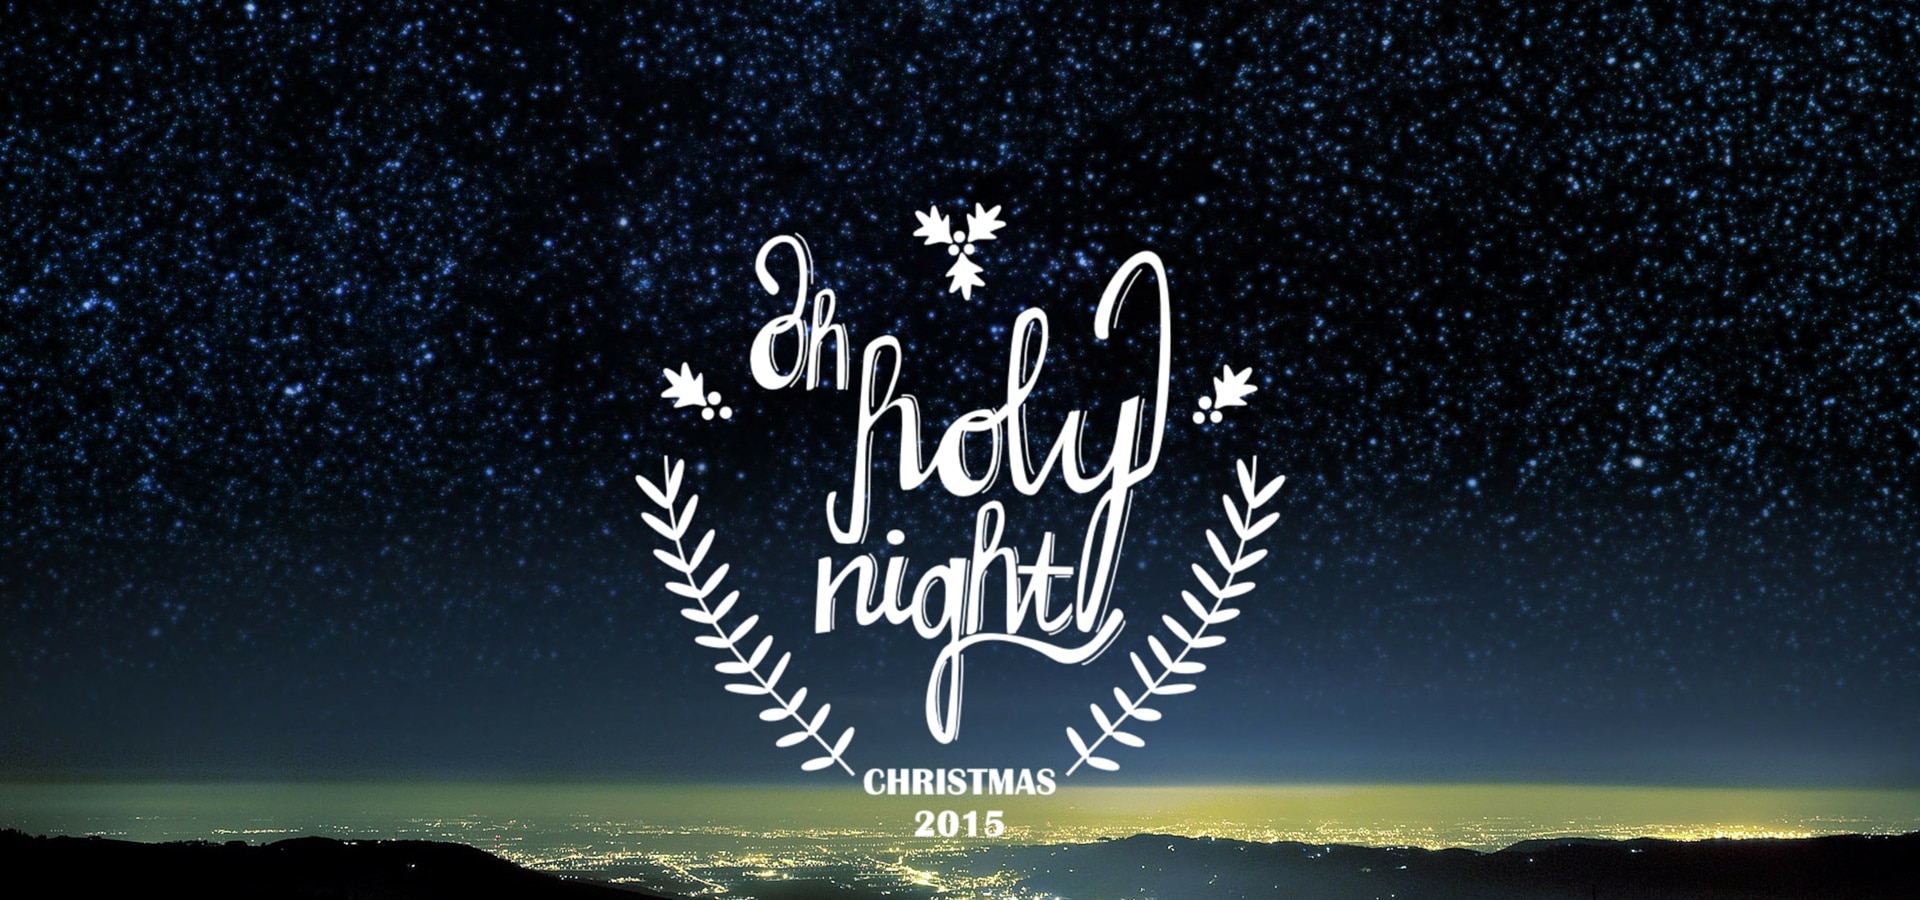 Oh holy night – Seeds of Faith